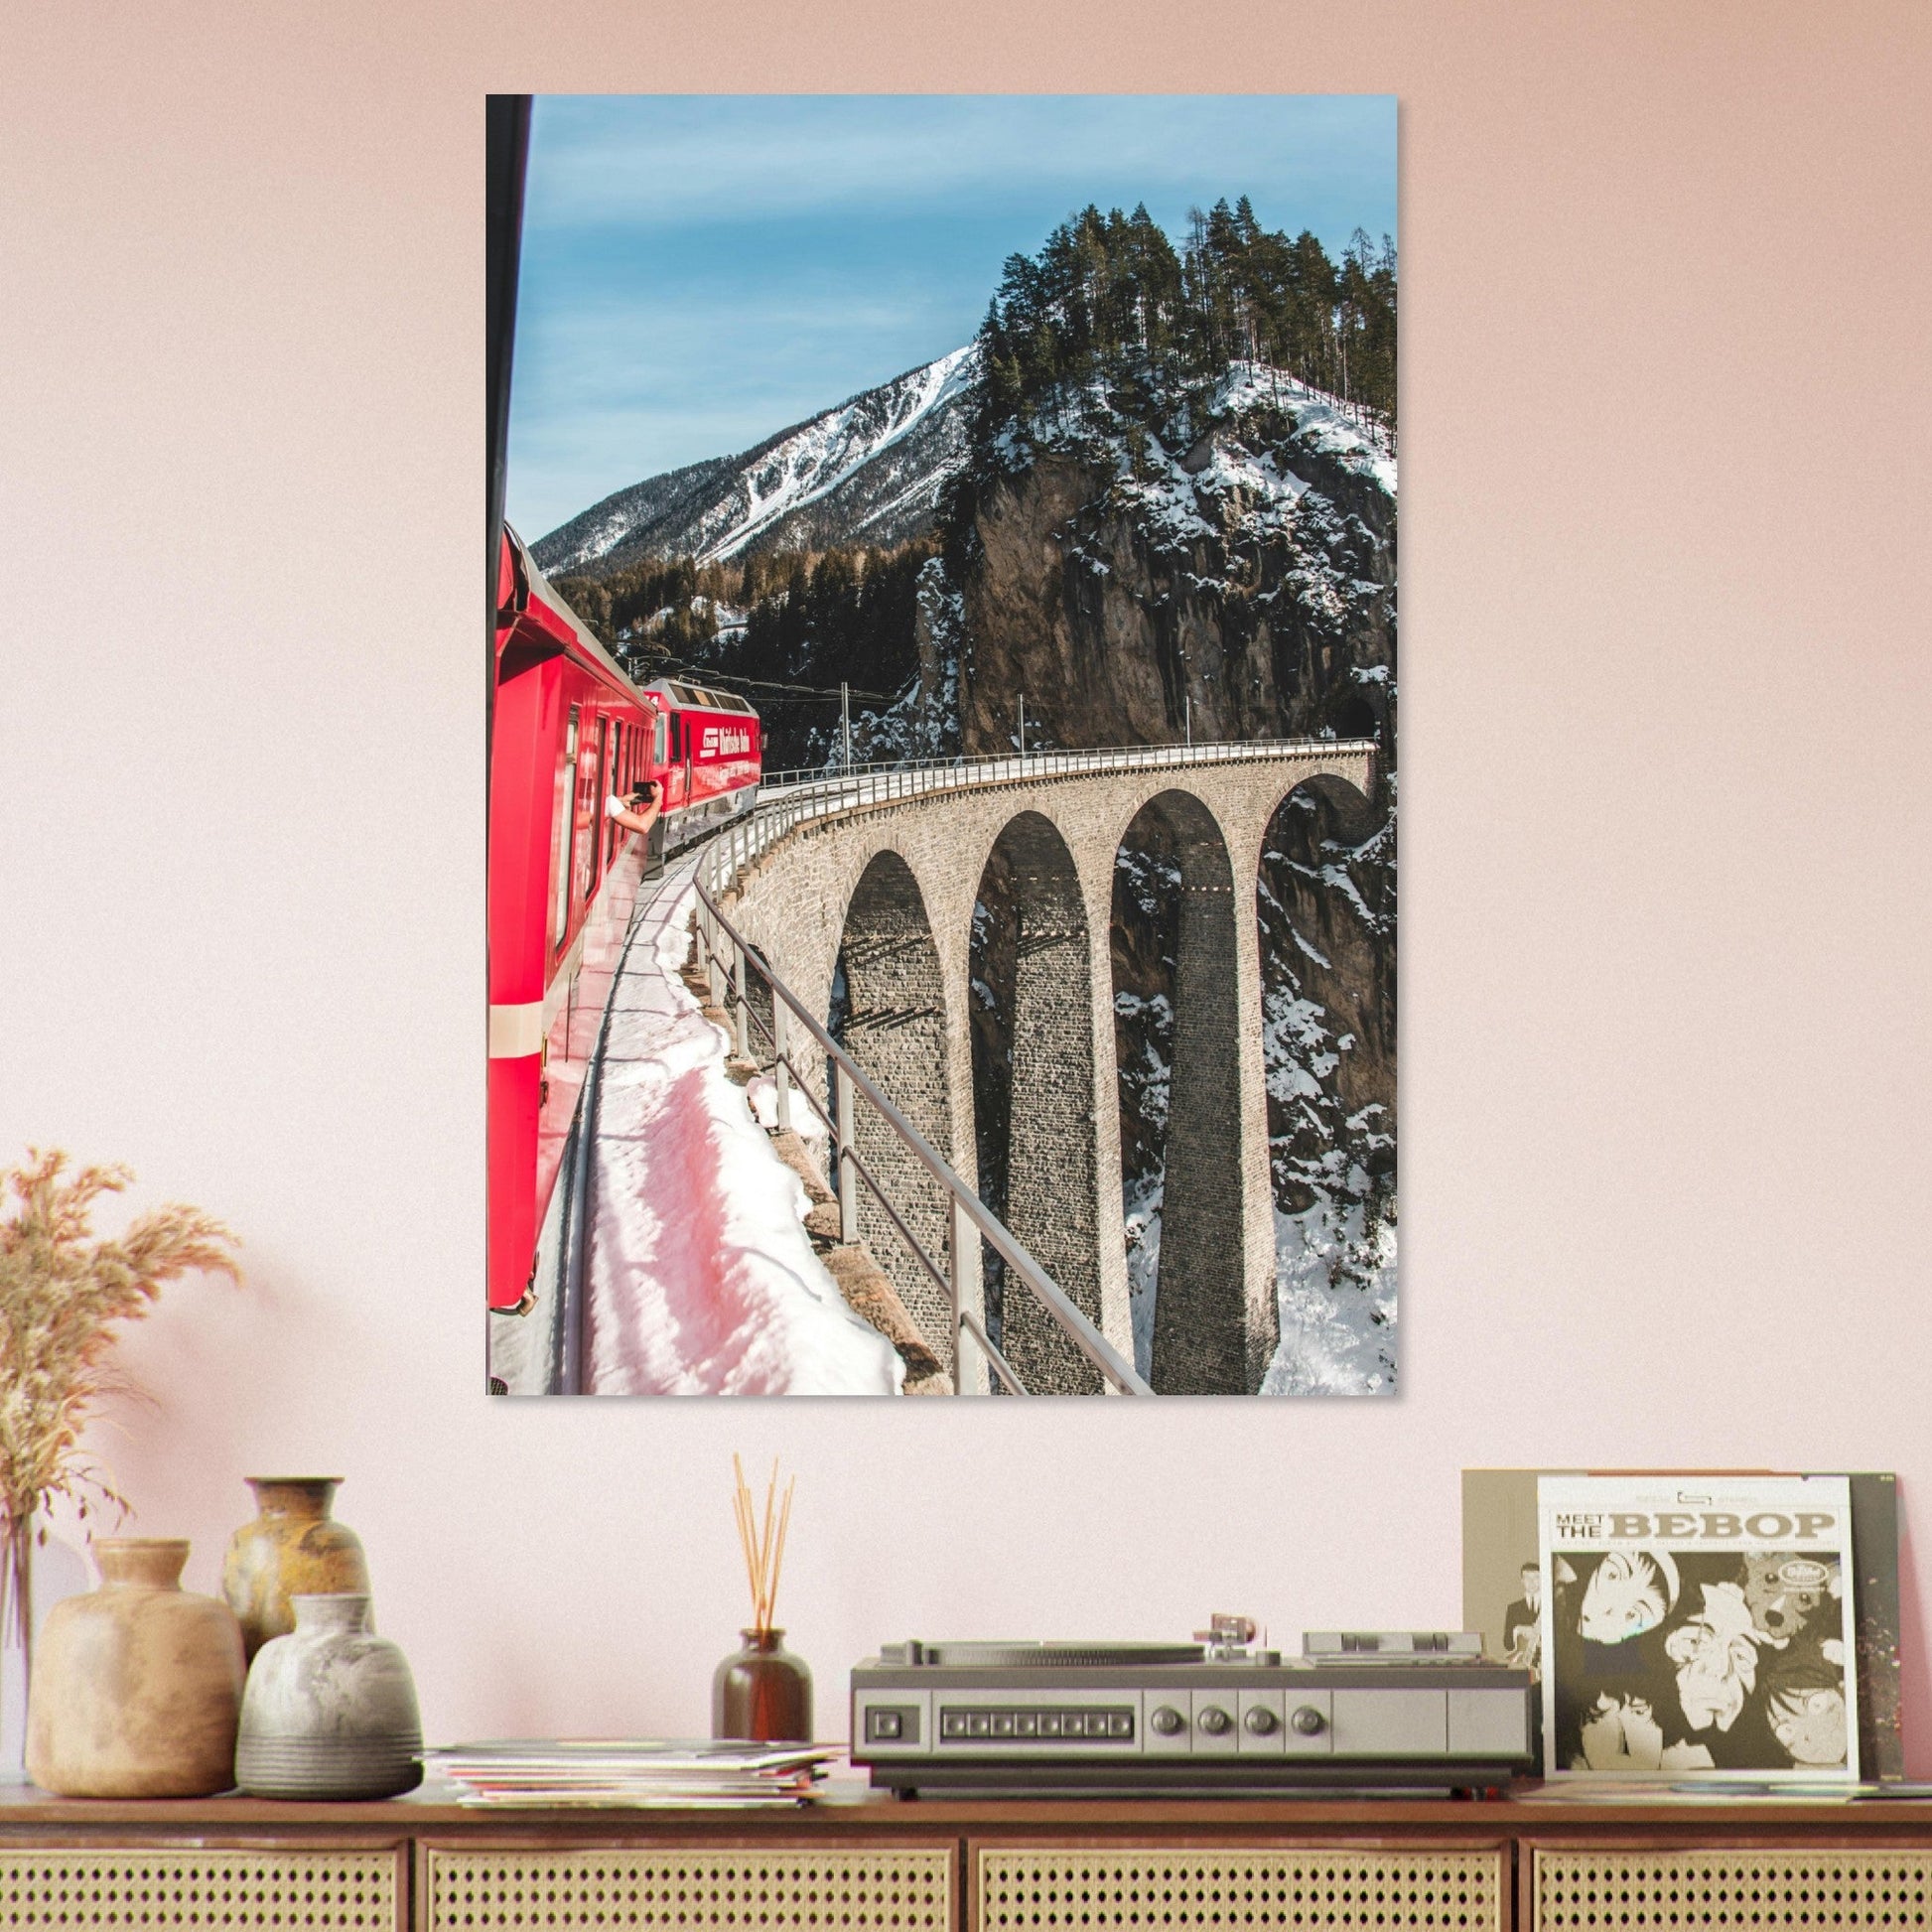 Vente Photo d'un train sur le Viaduc de Landwasser, Suisse #2 - Tableau photo paysage